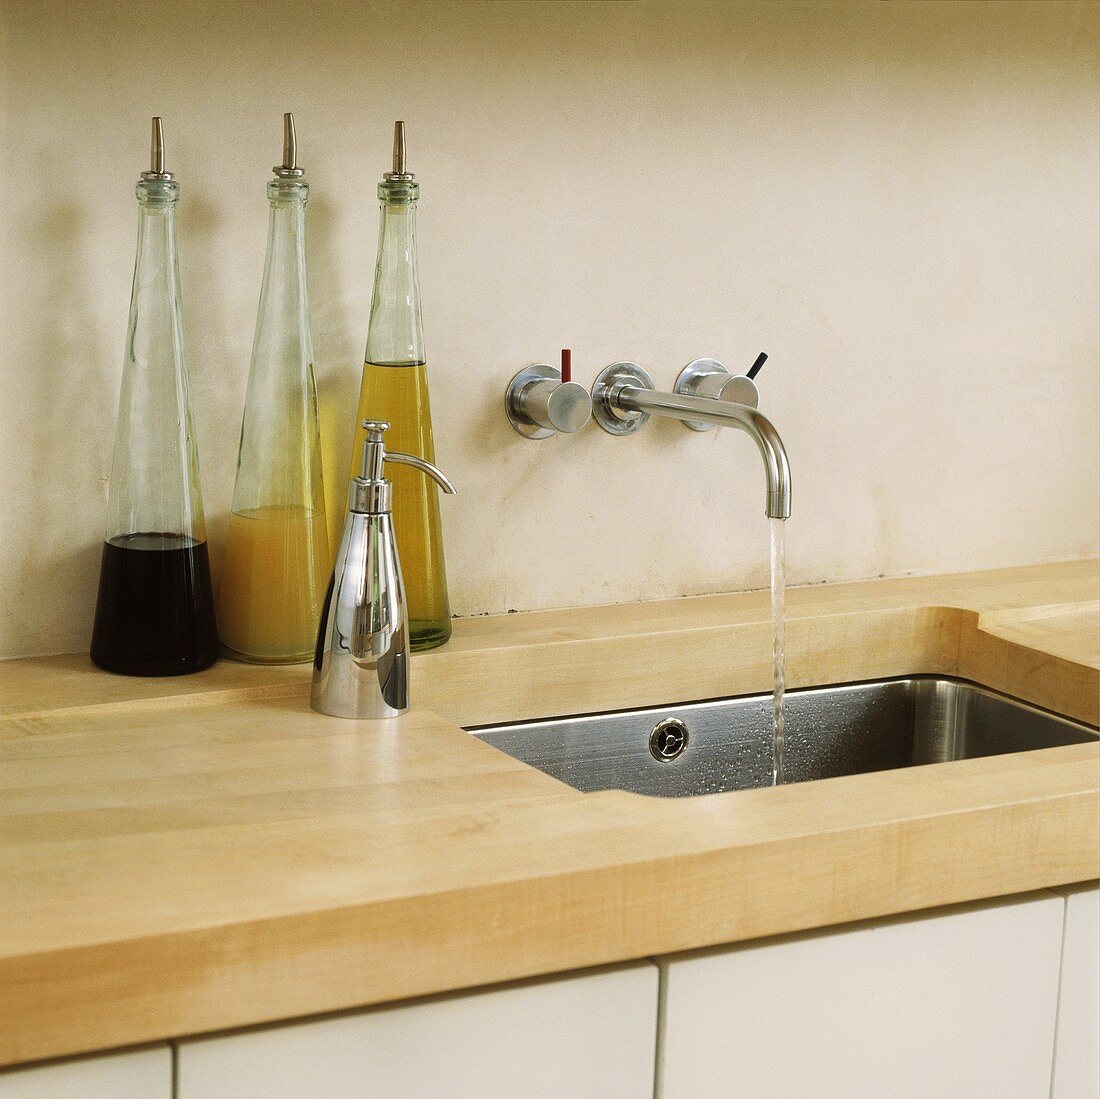 Küchenarbeitsfläche aus Holz mit eingefrästem Ablauf in Edelstahl-Unterbaubecken und moderner Wandarmatur neben Flaschen mit Essig und Öl